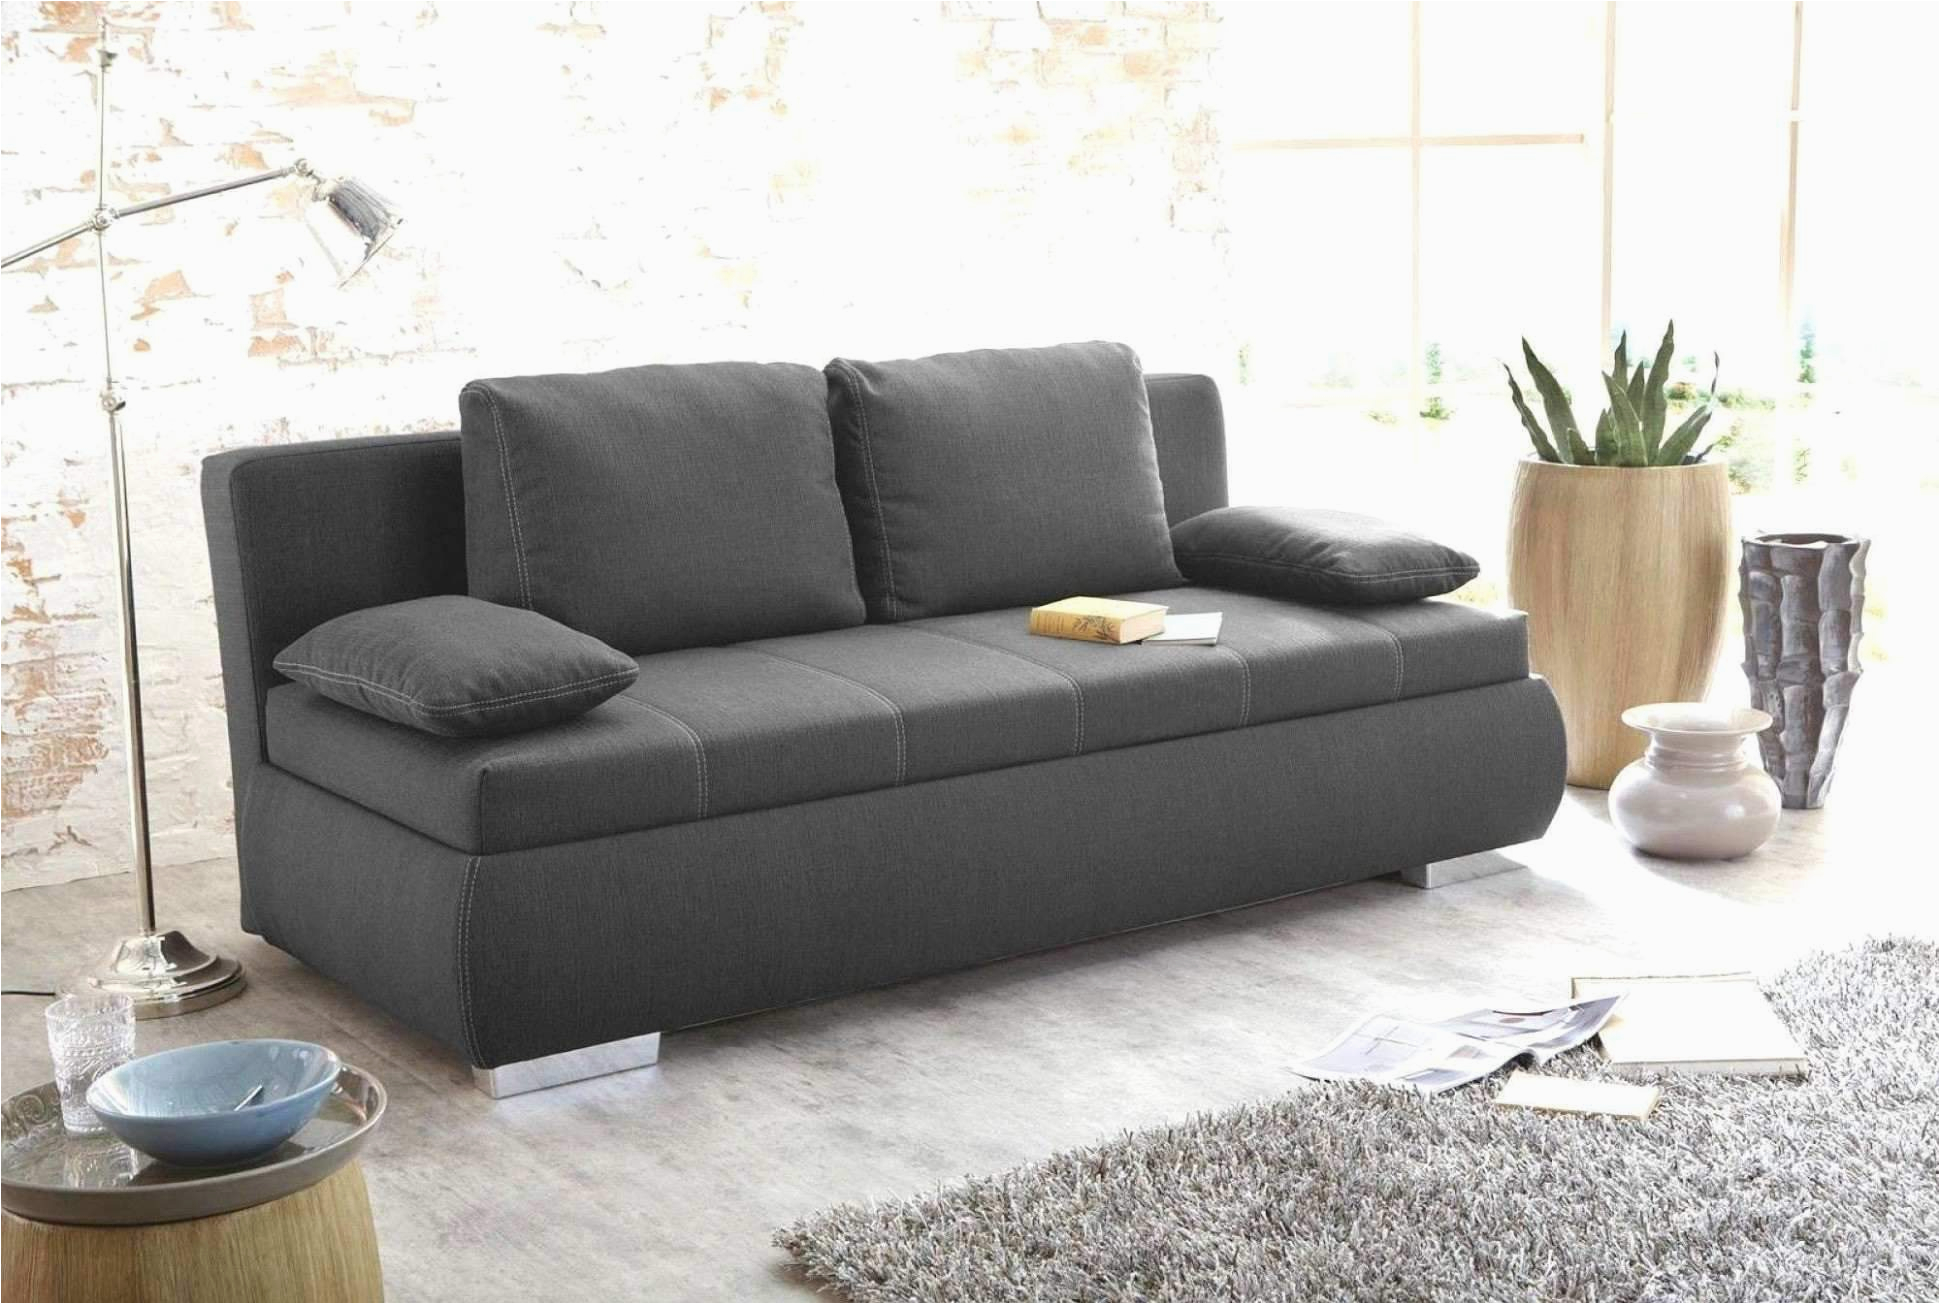 wohnzimmer couch gunstig frisch 50 einzigartig von sofa kaufen gunstig konzept of wohnzimmer couch gunstig